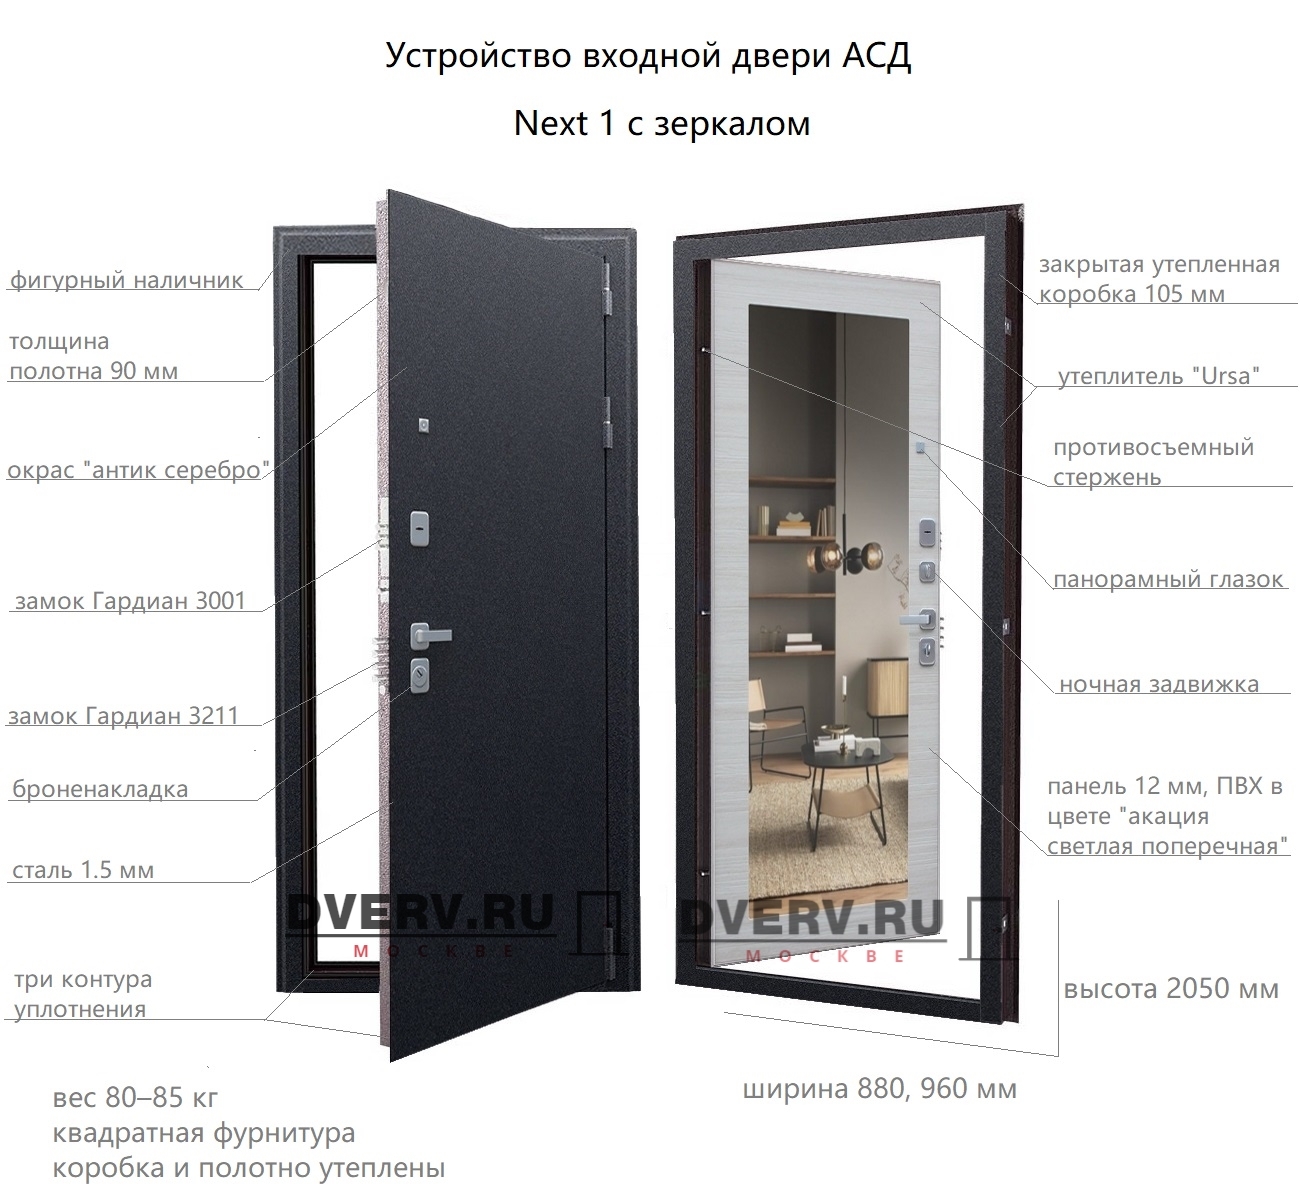 размеры и устройство двери Некст 1 с зеркалом АСД